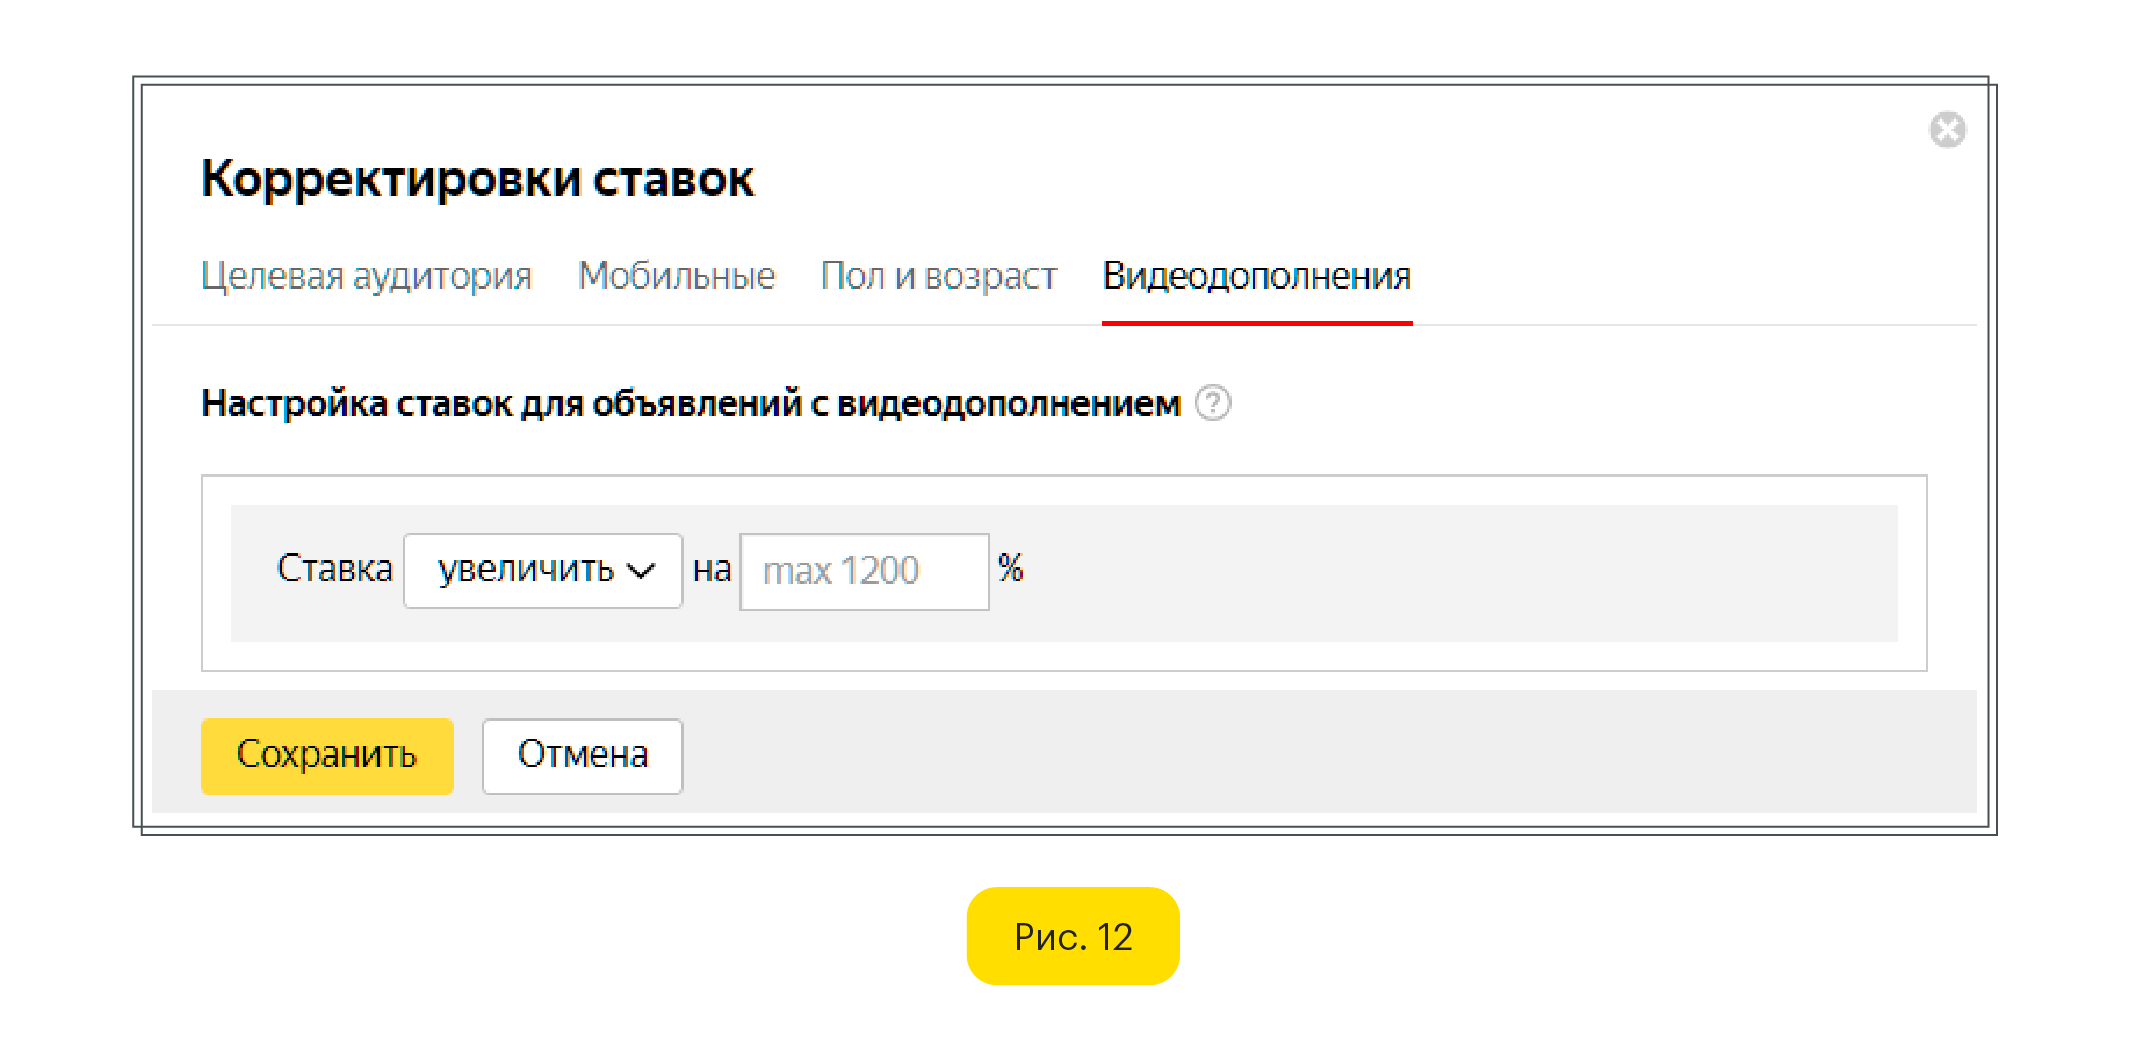 Корректировки ставок для видеодополнении Яндекс Директ